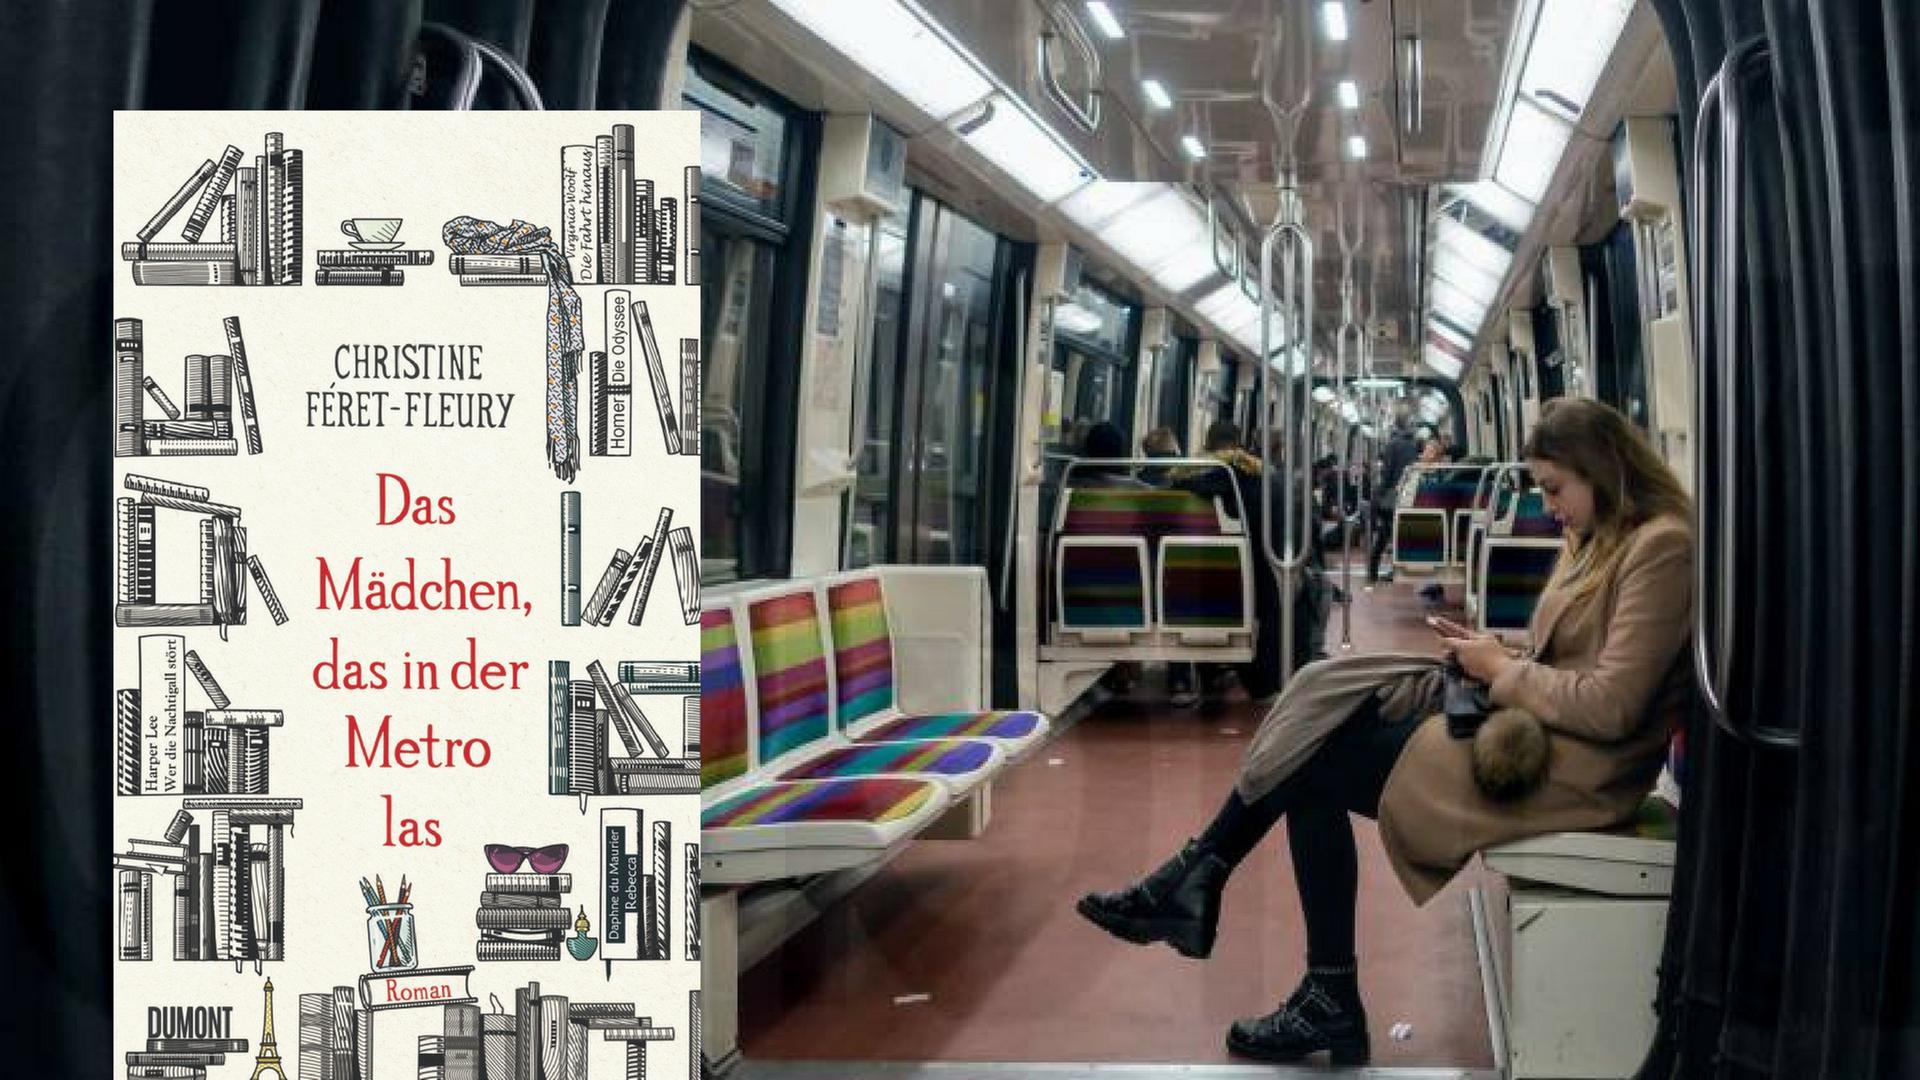 Buchcover: Christine Féret-Fleury: "Das Mädchen, das in der Metro las"